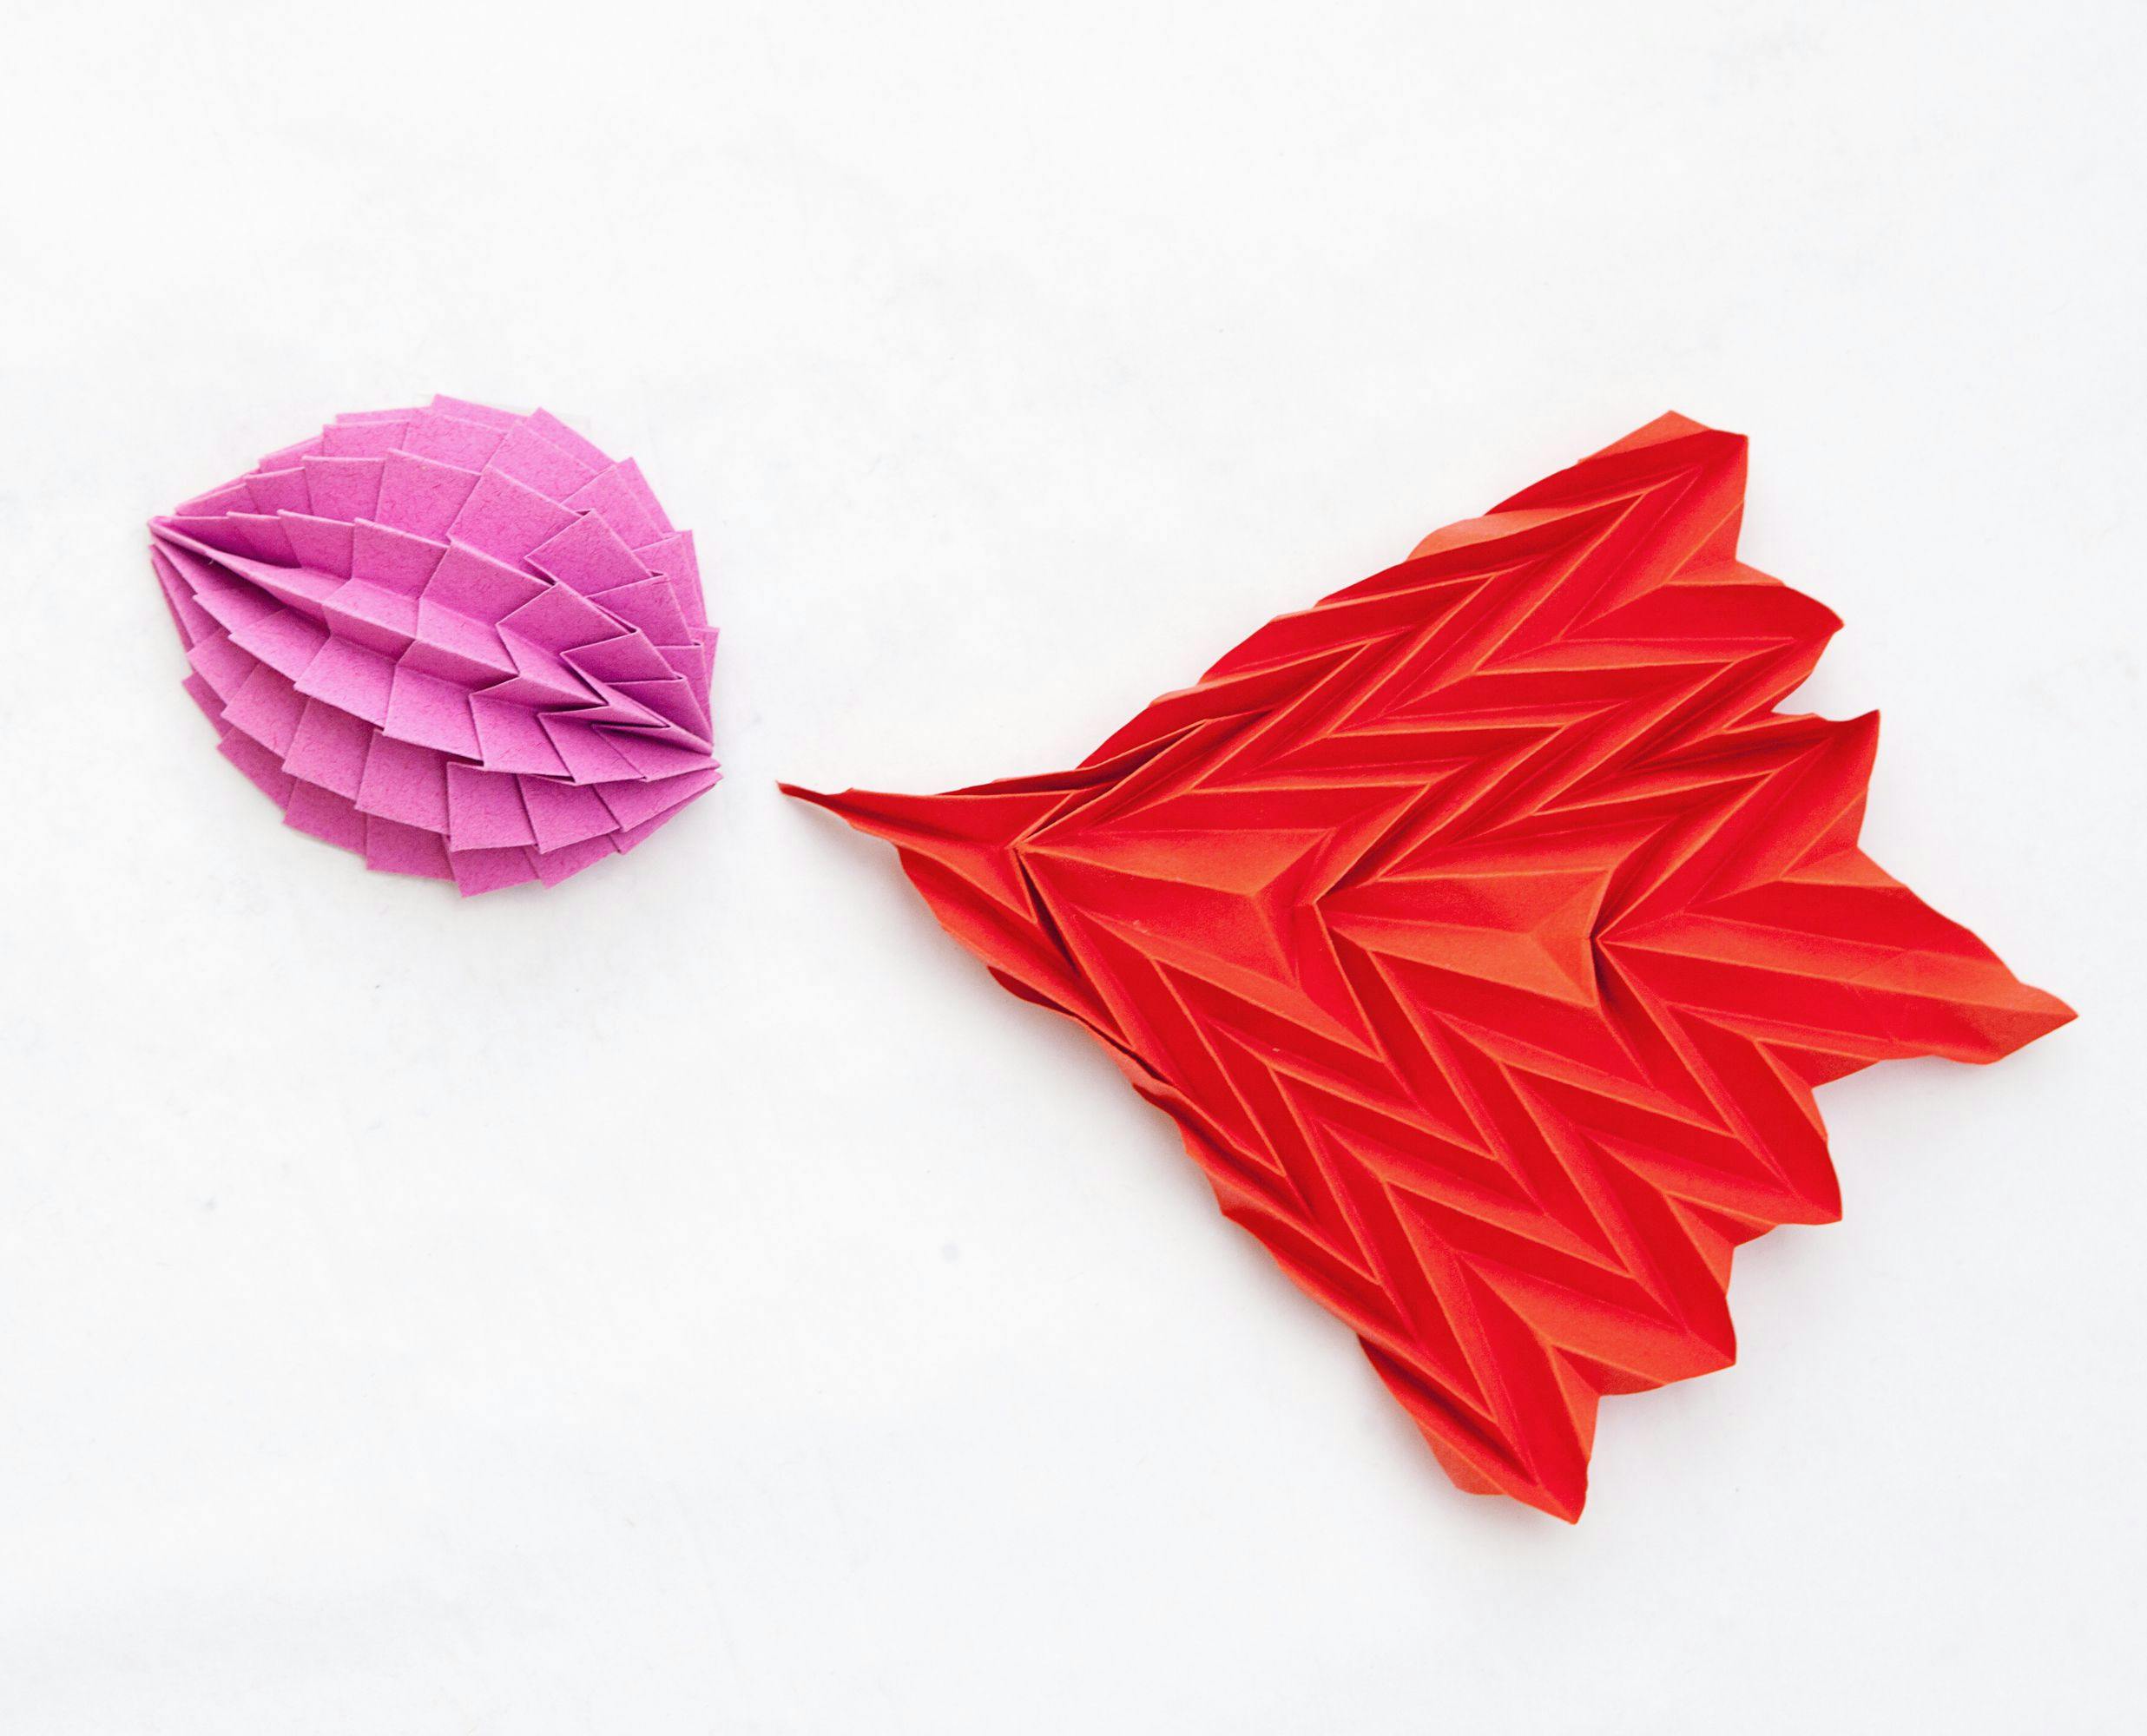 Två geometriska origami i rosa och rött